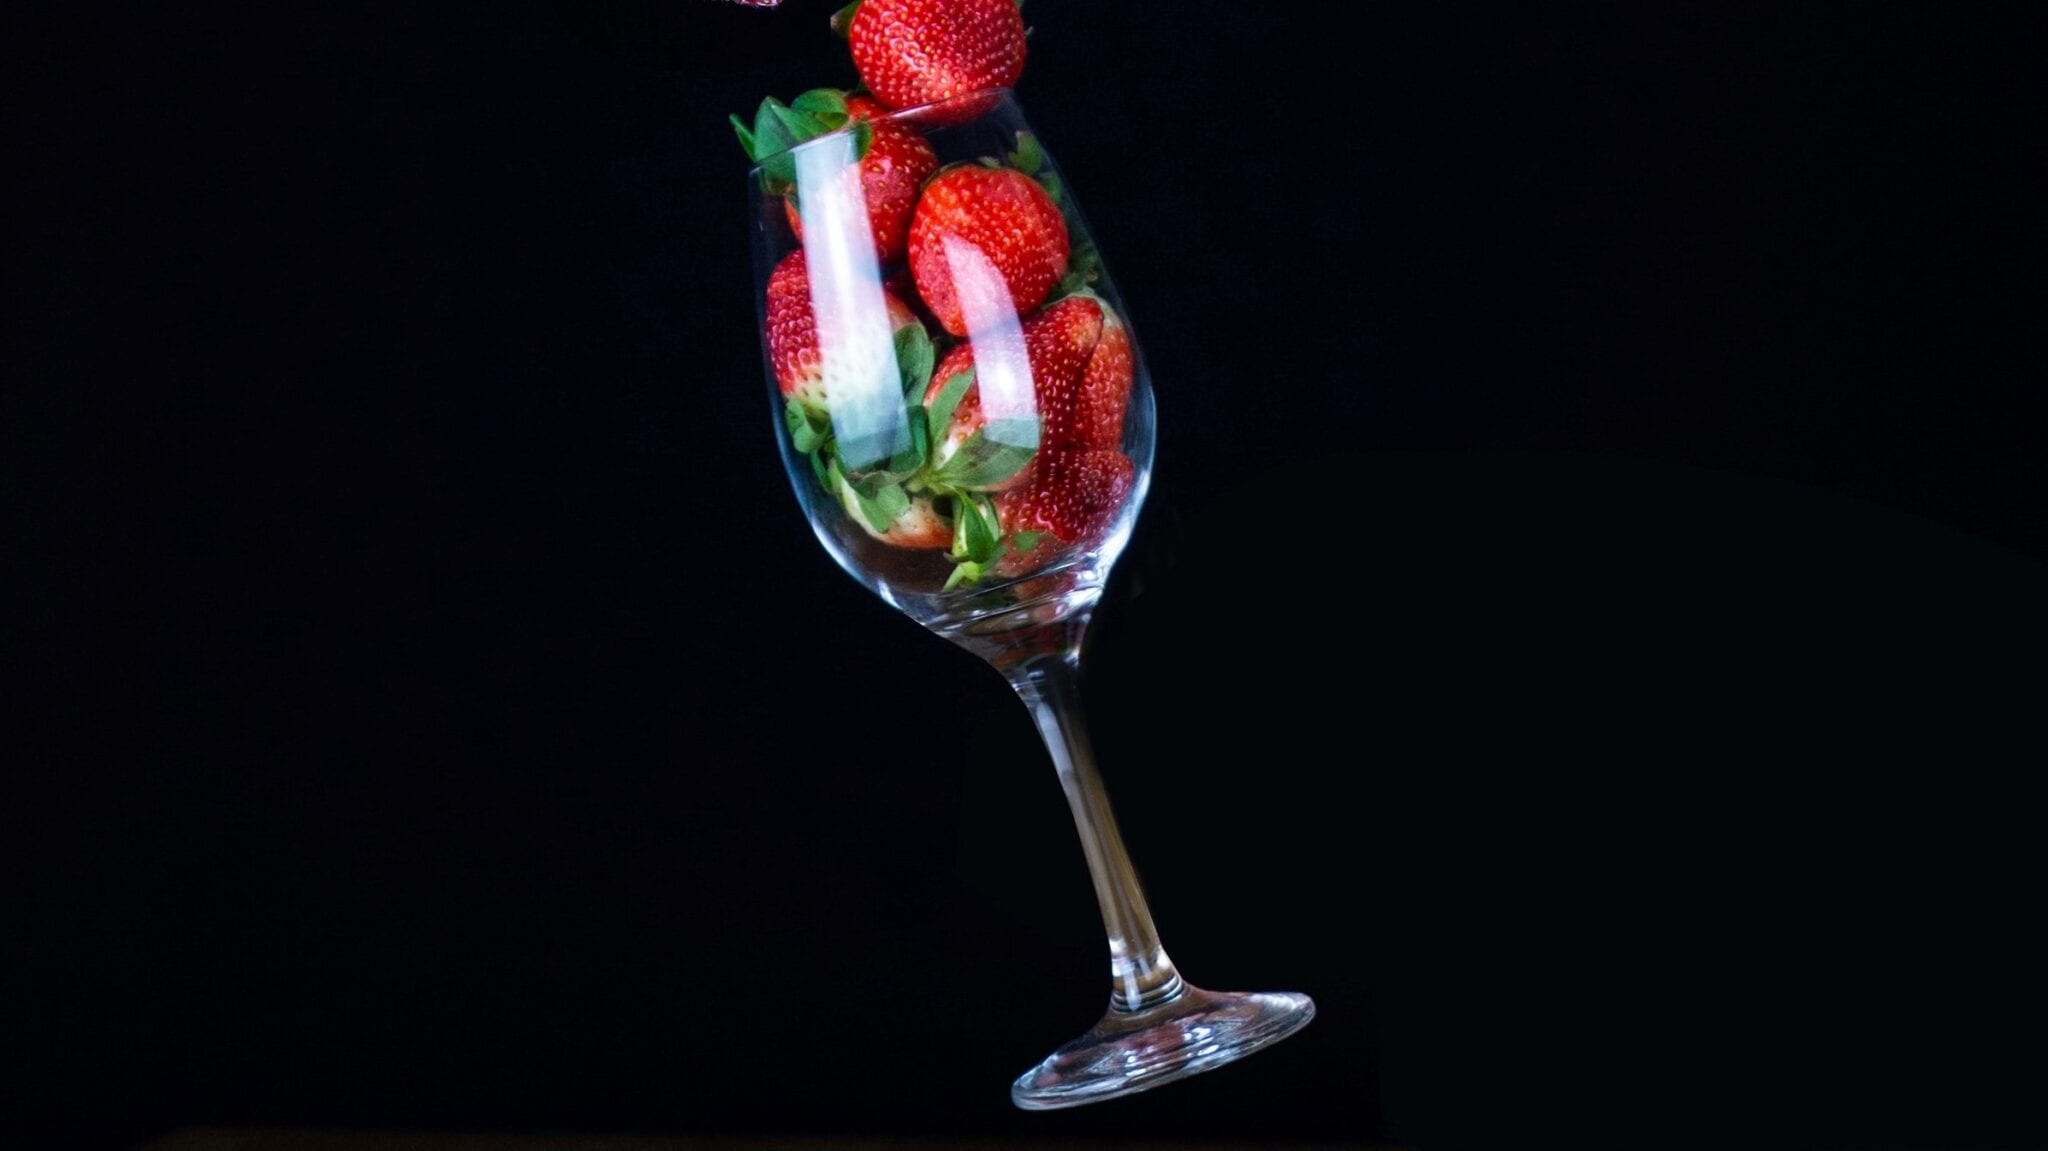 Wine glass with strawberries. Photo by Yulia Matvienko, Unsplash